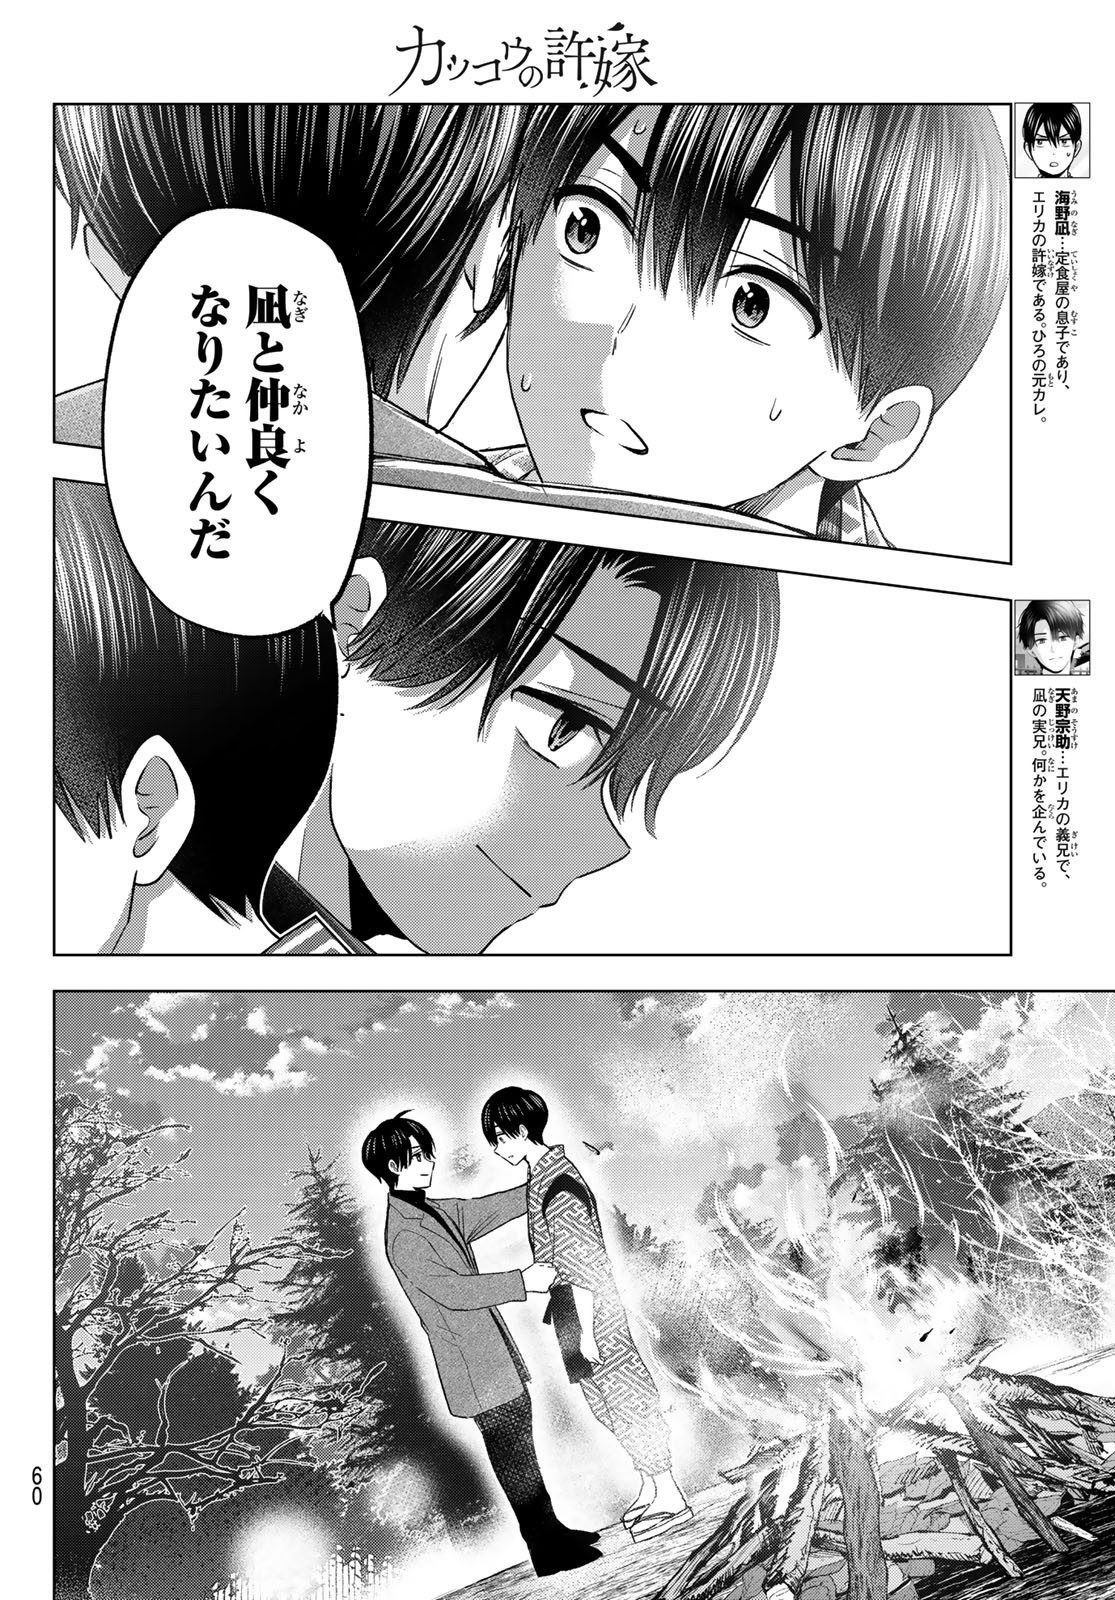 Kakkou no Iinazuke - Chapter 196 - Page 2